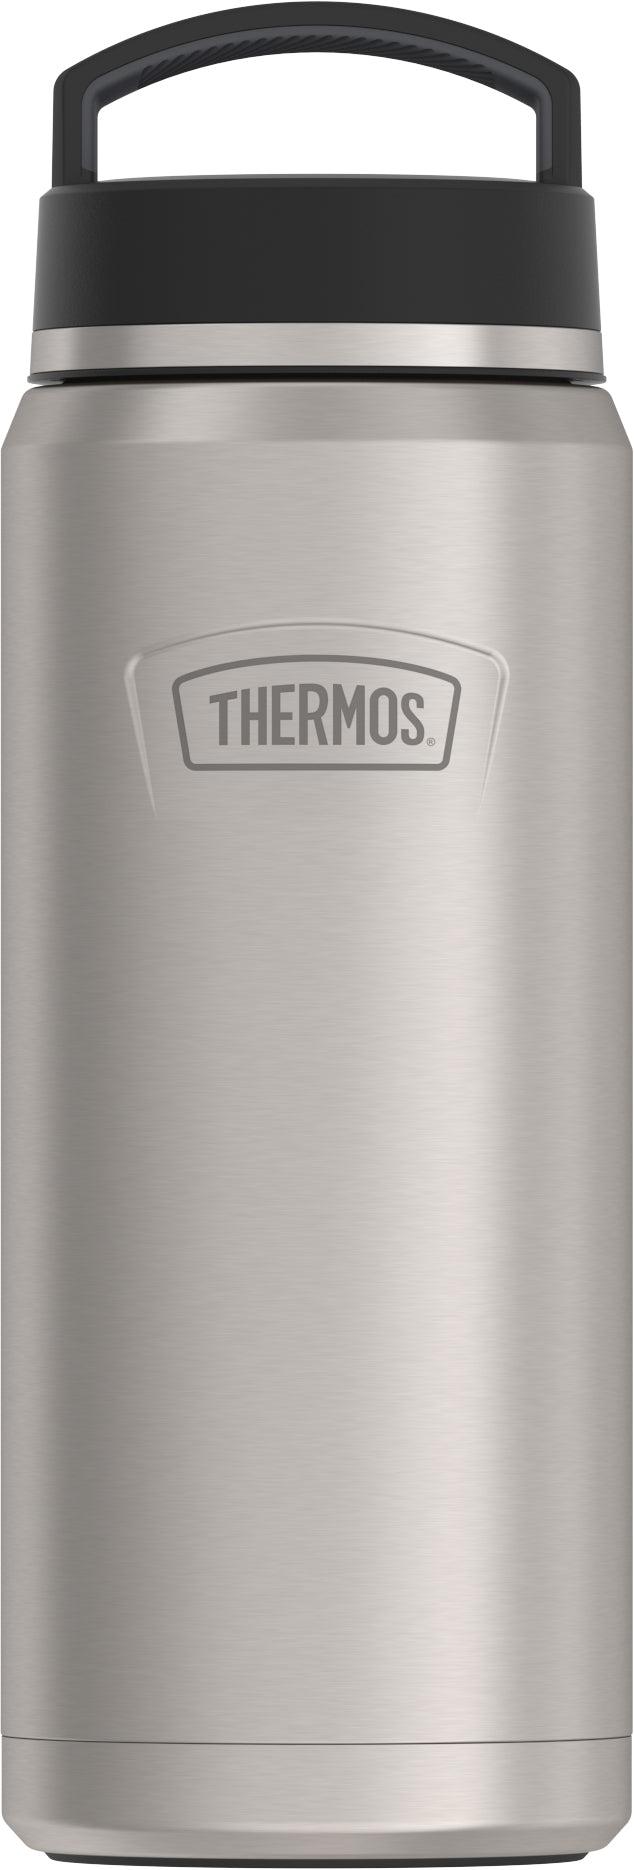 Thermos Vacuum Insulated